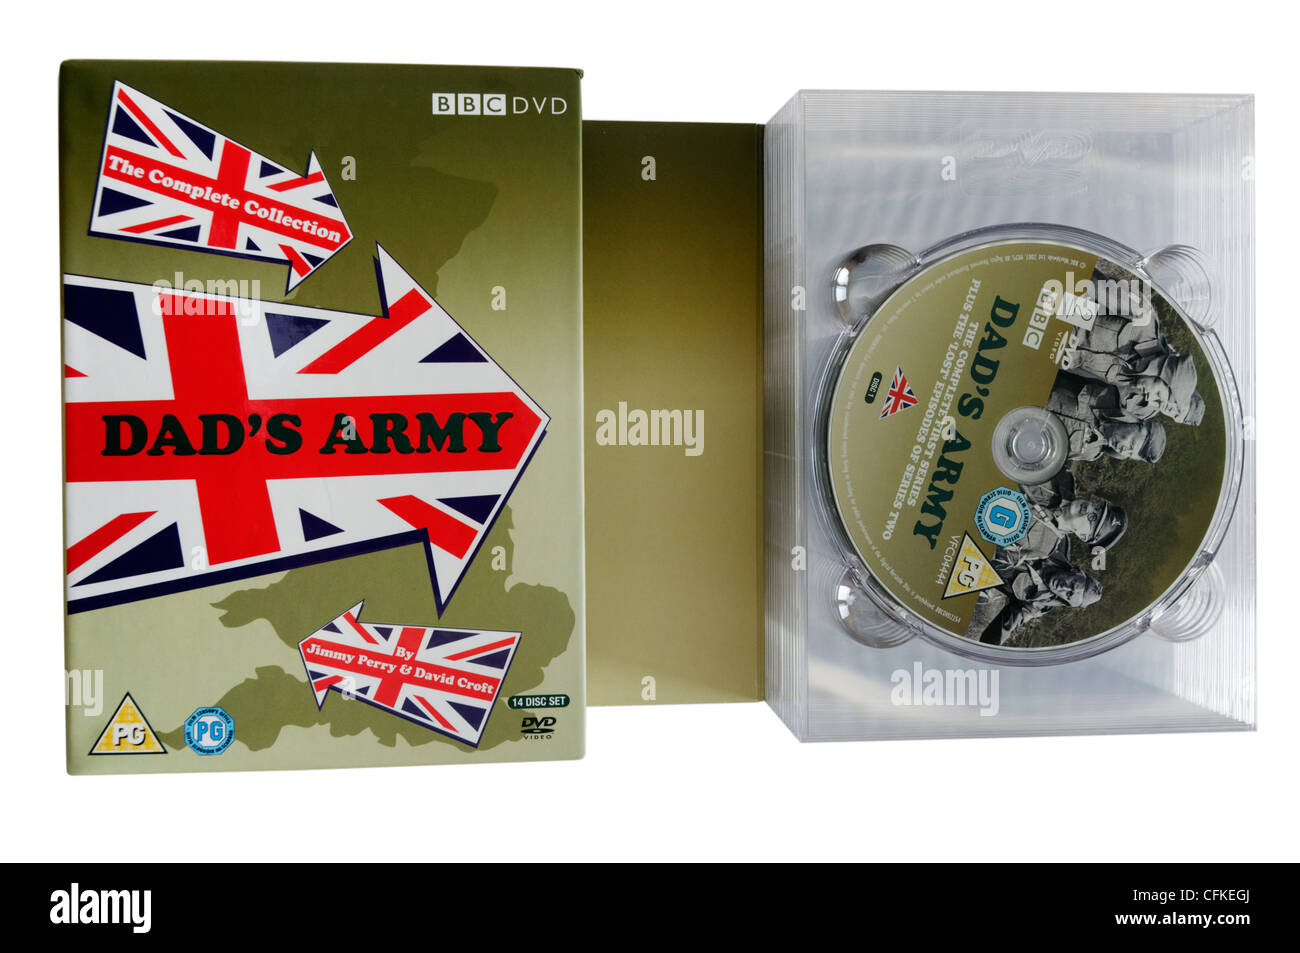 Dad's Army DVD box set Stock Photo - Alamy